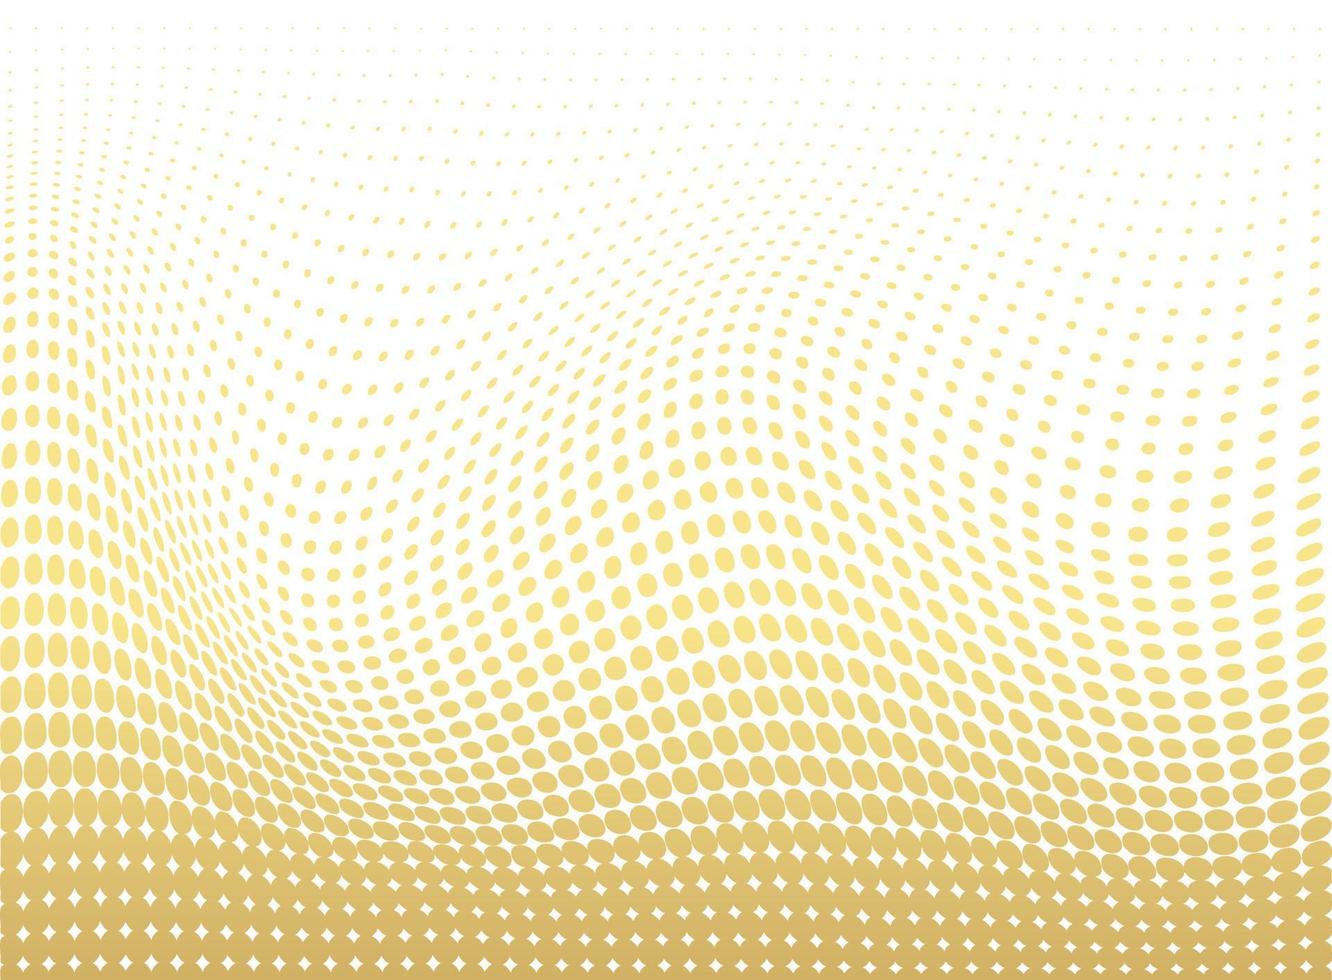 Fondo punteado de oro abstracto. patrón de grunge futurista, punto, onda. vector textura de arte pop óptico moderno para carteles, sitios, tarjetas de visita, portada, maqueta de etiquetas, diseño vintage